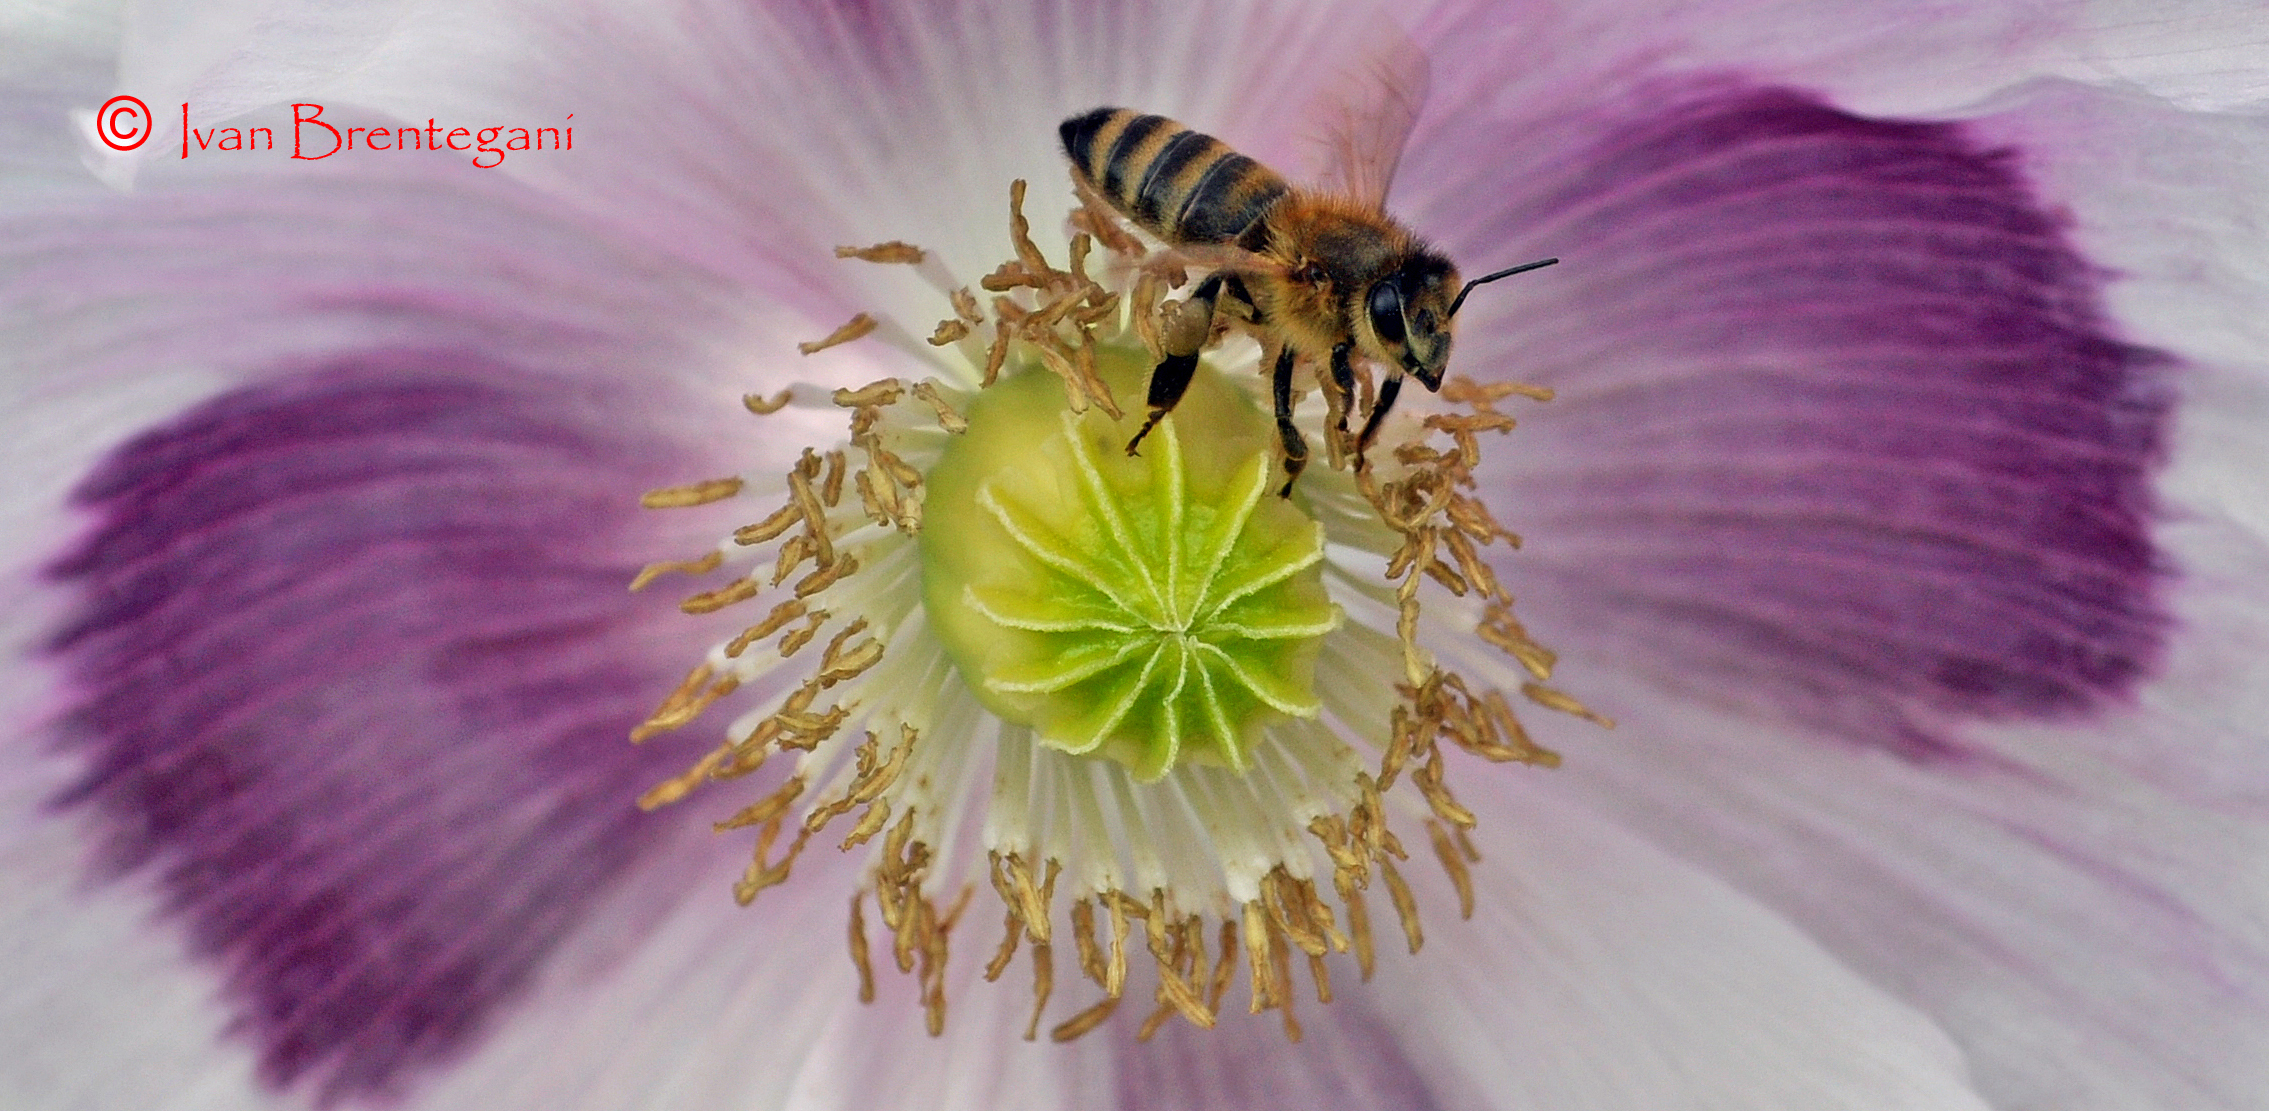 Di fiore in fiore......Il dolce volo dell'ape...